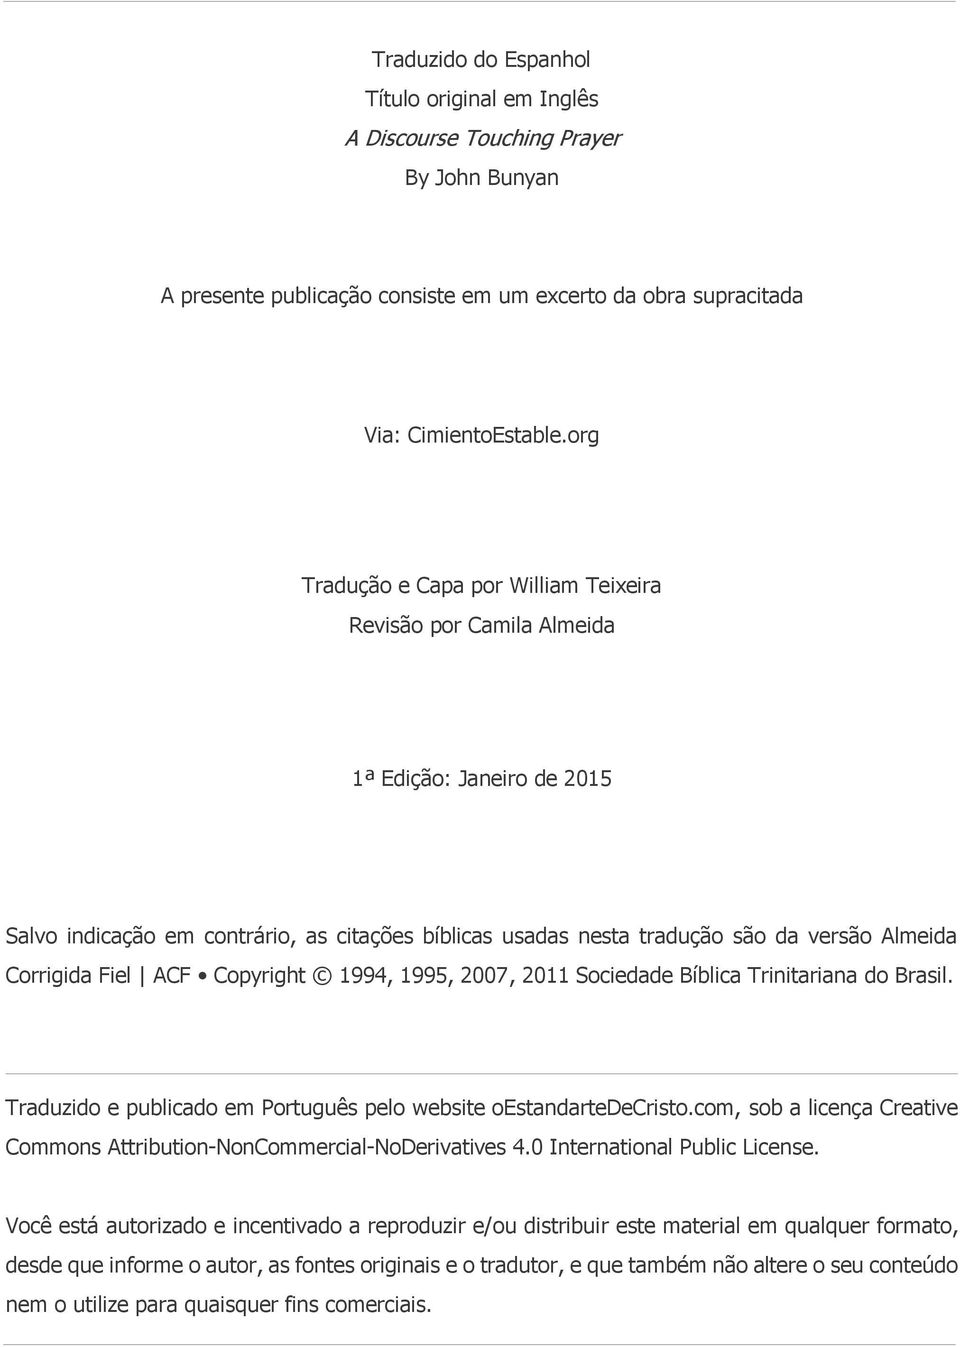 Fiel ACF Copyright 1994, 1995, 2007, 2011 Sociedade Bíblica Trinitariana do Brasil. Traduzido e publicado em Português pelo website oestandartedecristo.